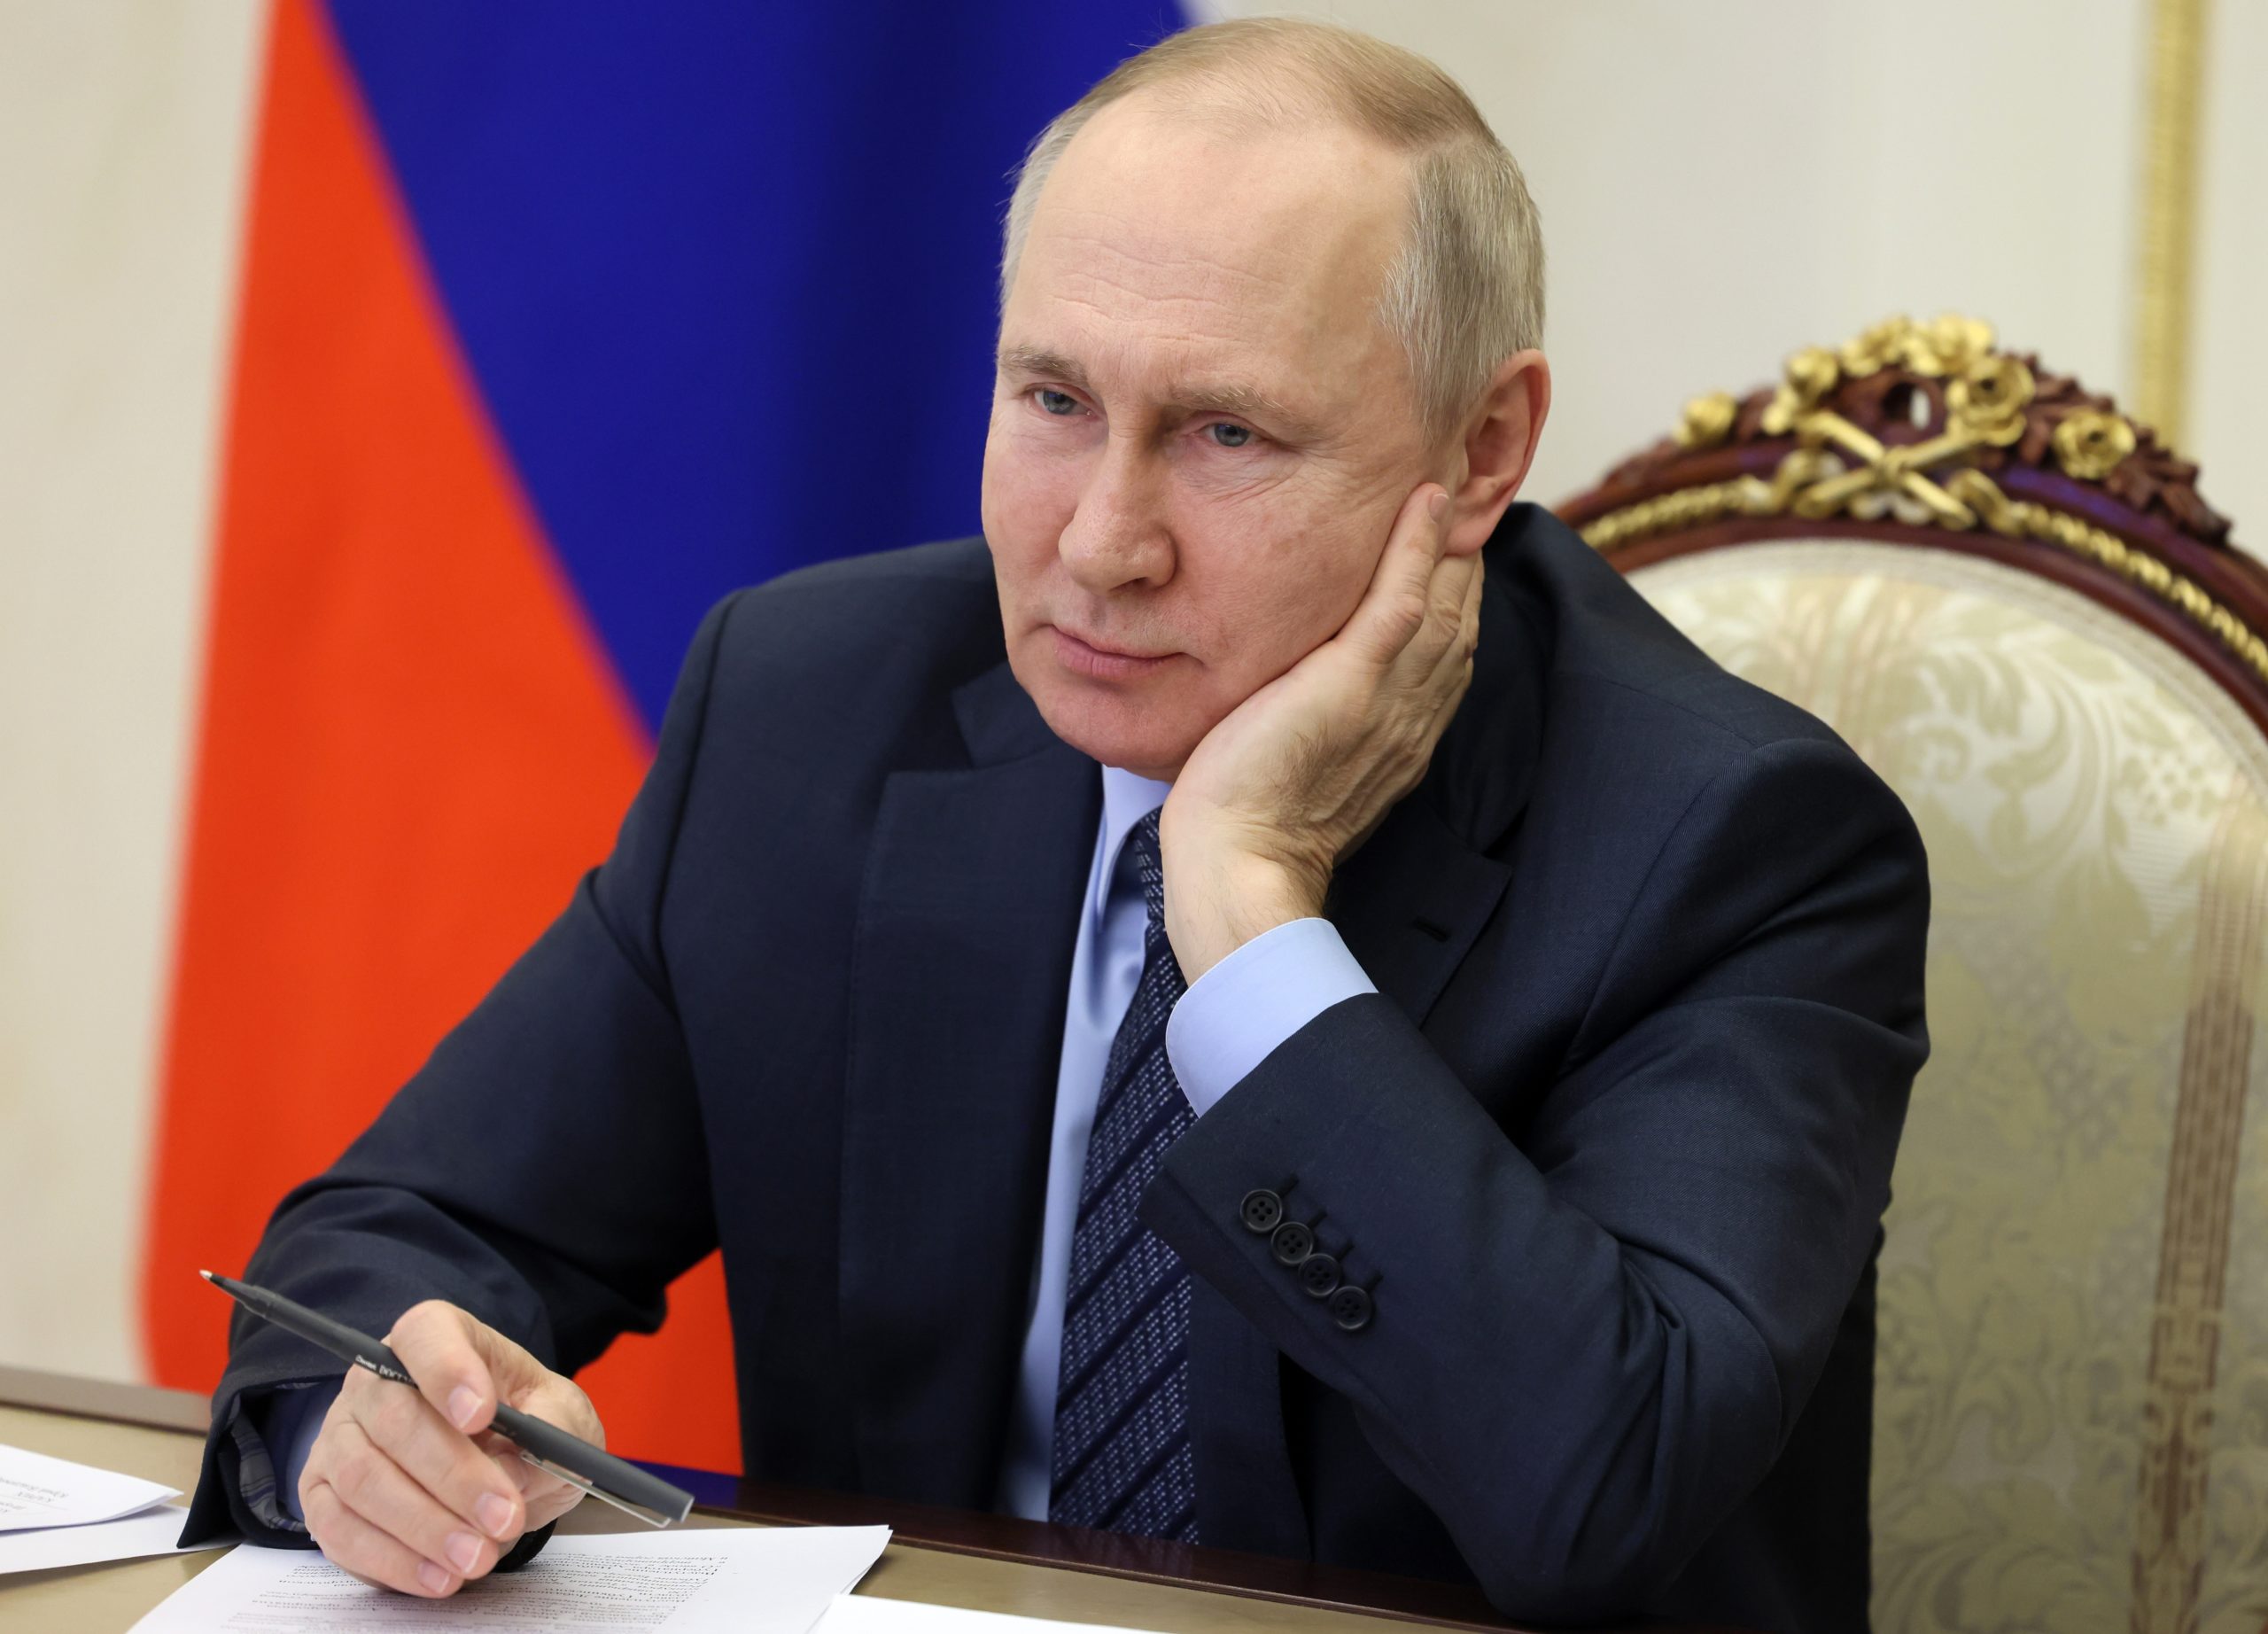 Ρωσία: Ο Πούτιν δεν θα απευθύνει ομιλία στο ρωσικό Κοινοβούλιο πριν το τέλος του έτους